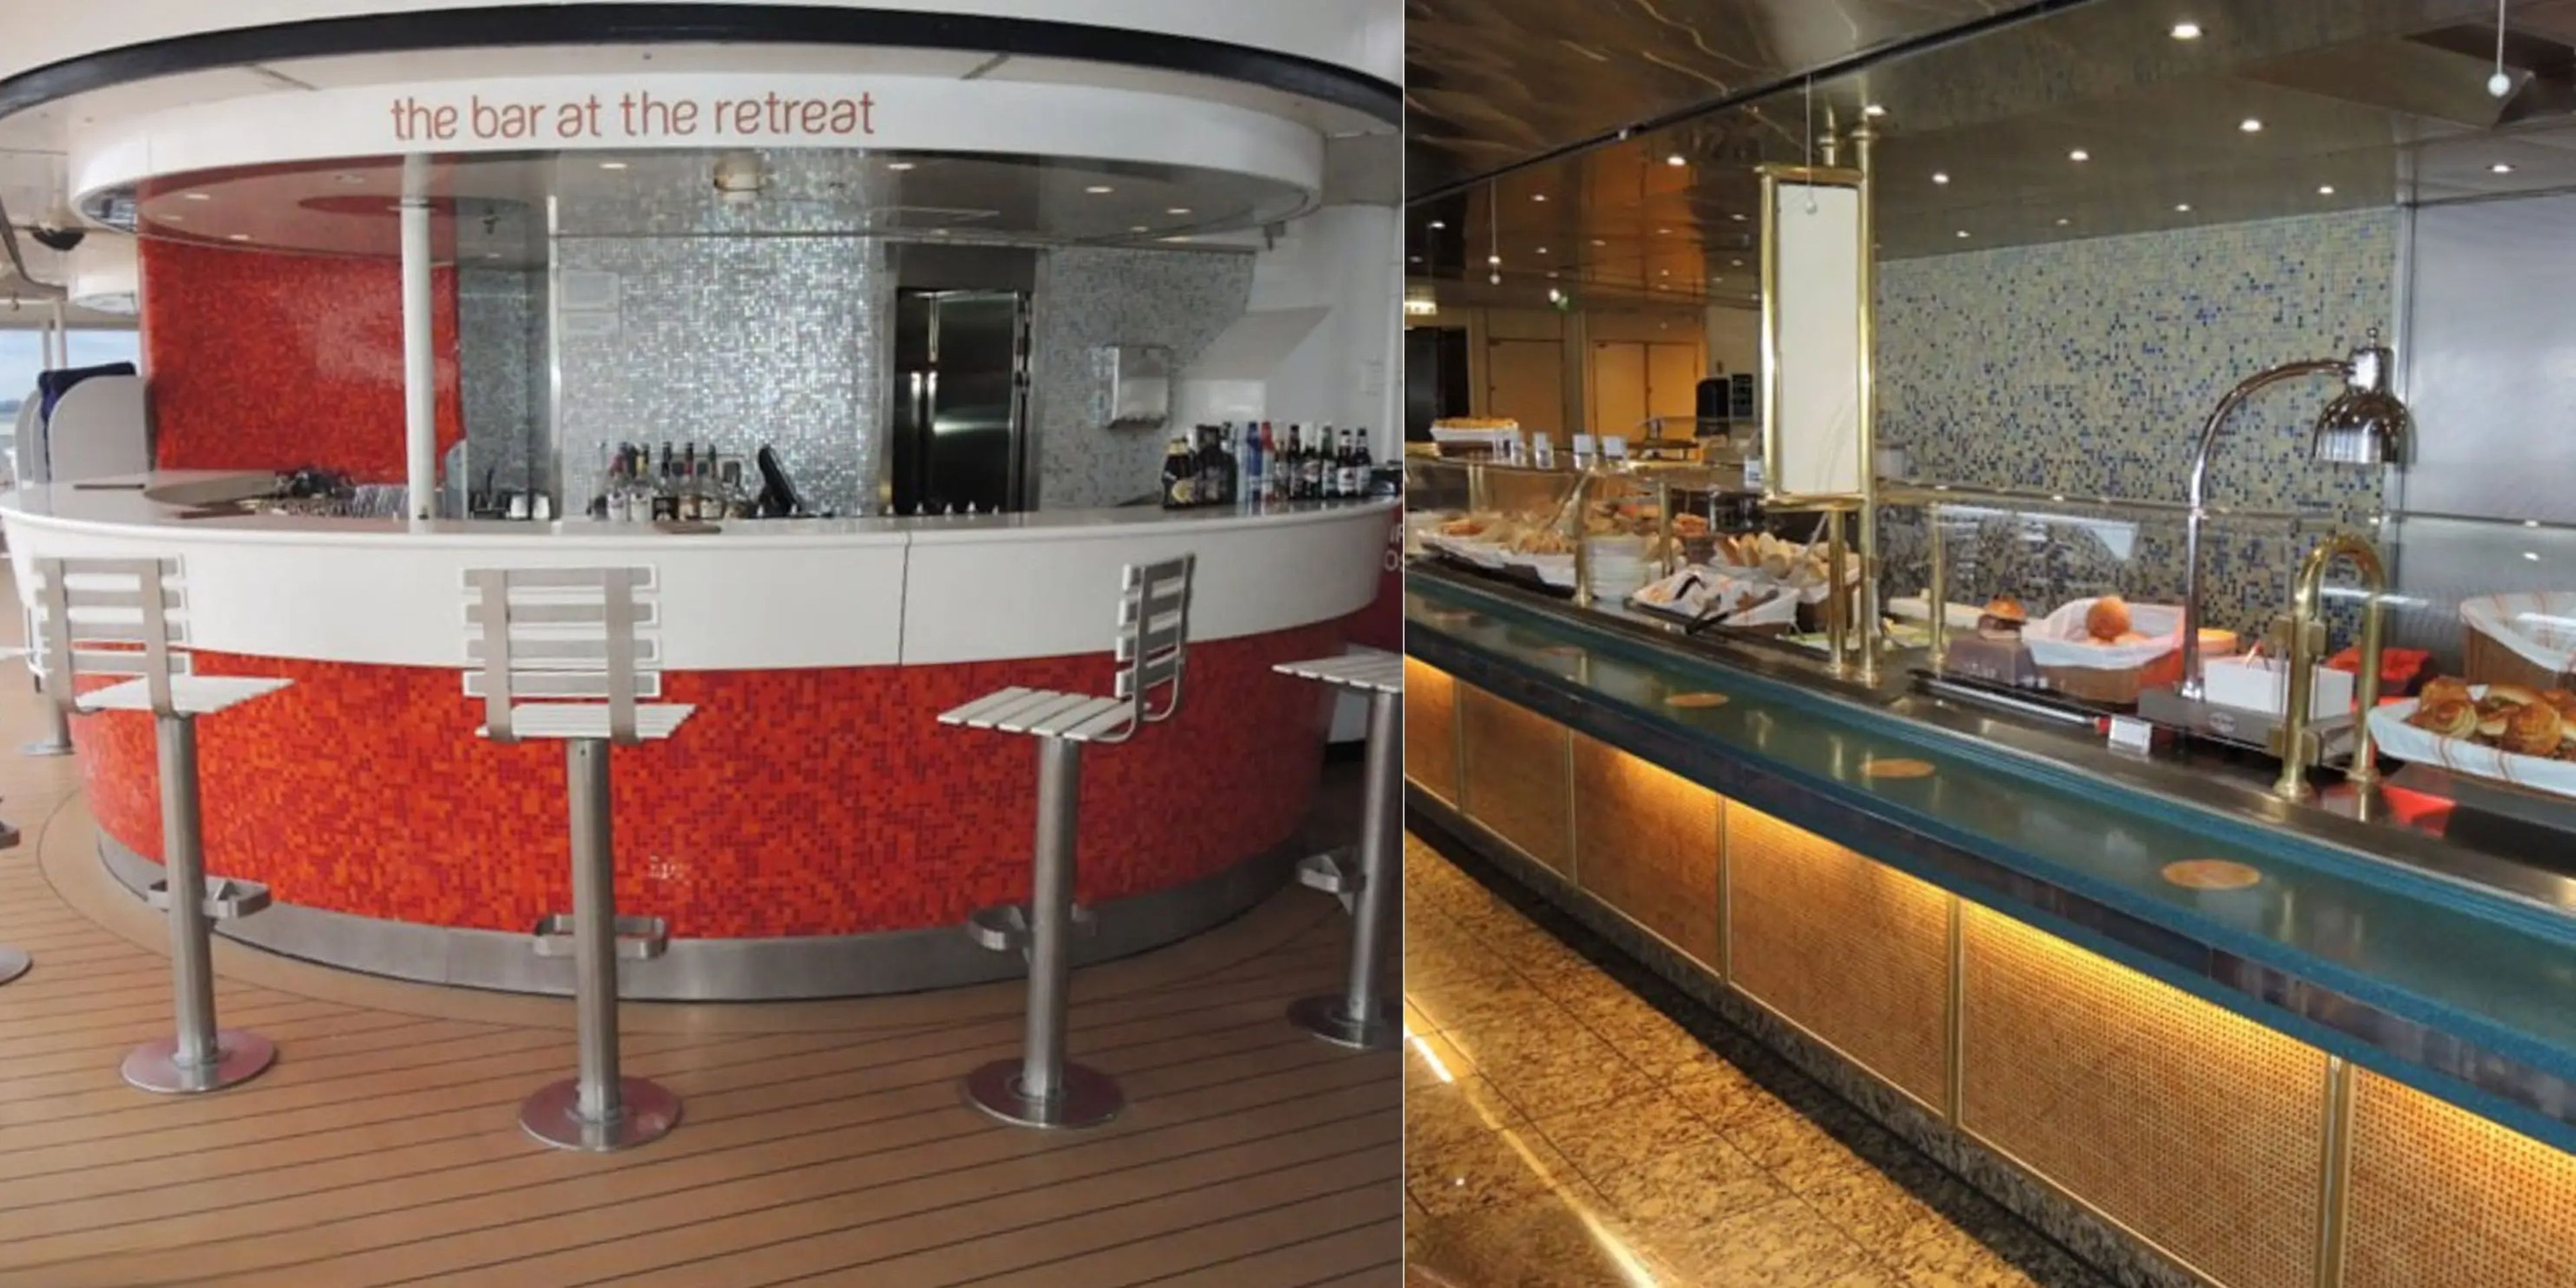 A principios de 2023, Victoria Cruises Line envió a Business Insider fotos de lo que sería el bufé del barco y uno de sus bares. La compañía indicó que los viajeros podían esperar cinco restaurantes y seis bares y salones.